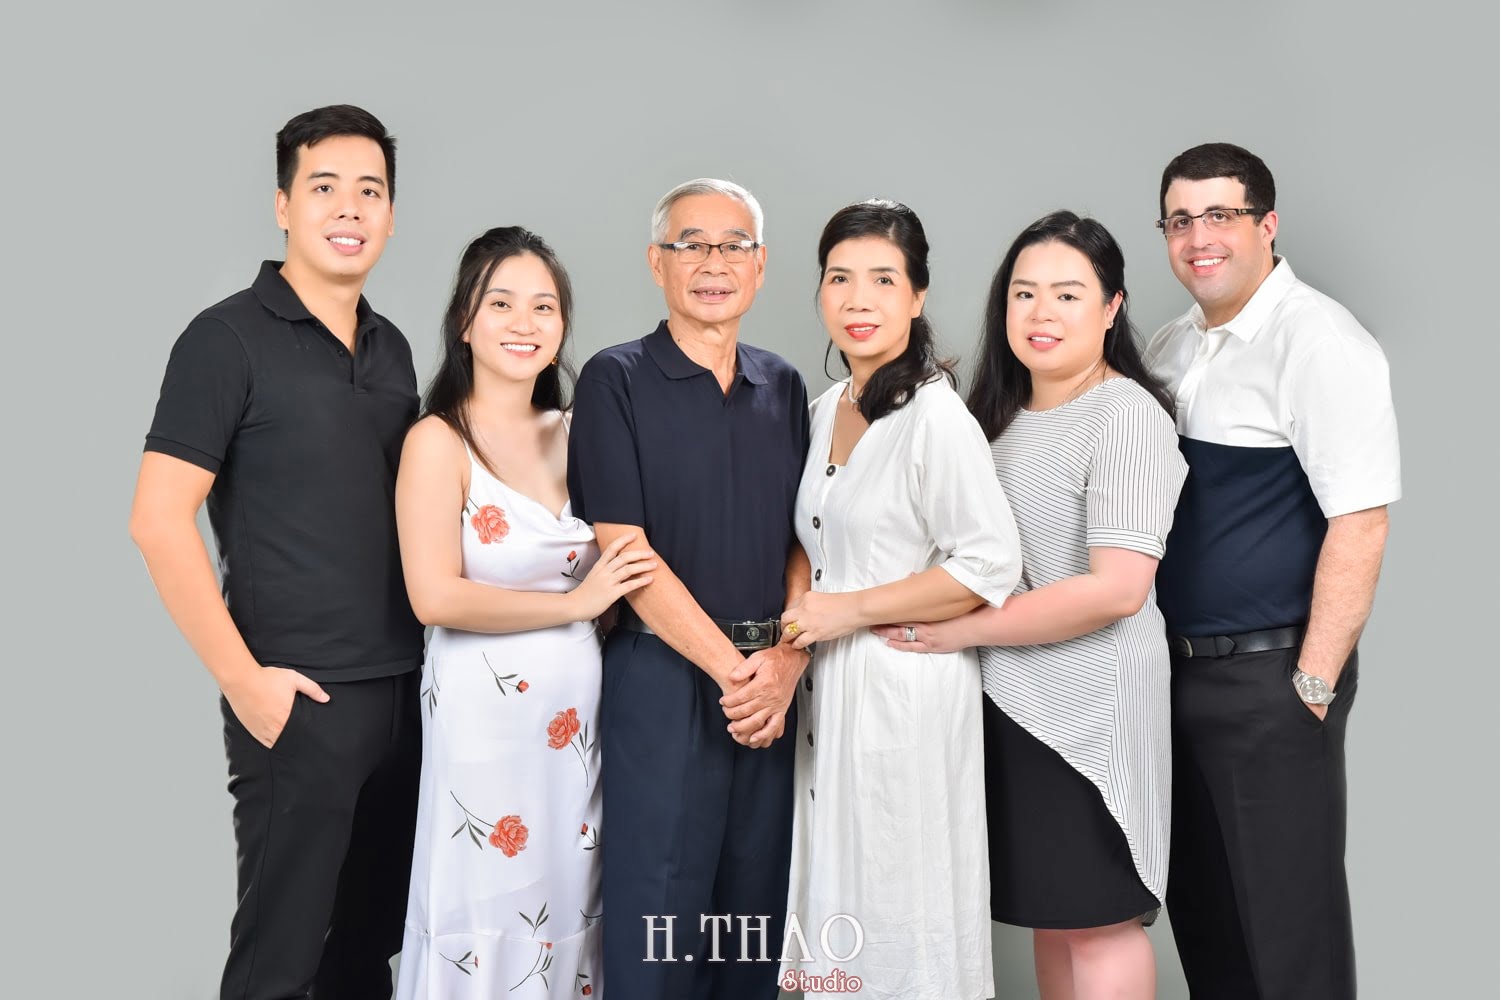 Anh gia dinh dep 5 min - Góc ảnh gia đình chụp trong studio đẹp đơn giản- HThao Studio